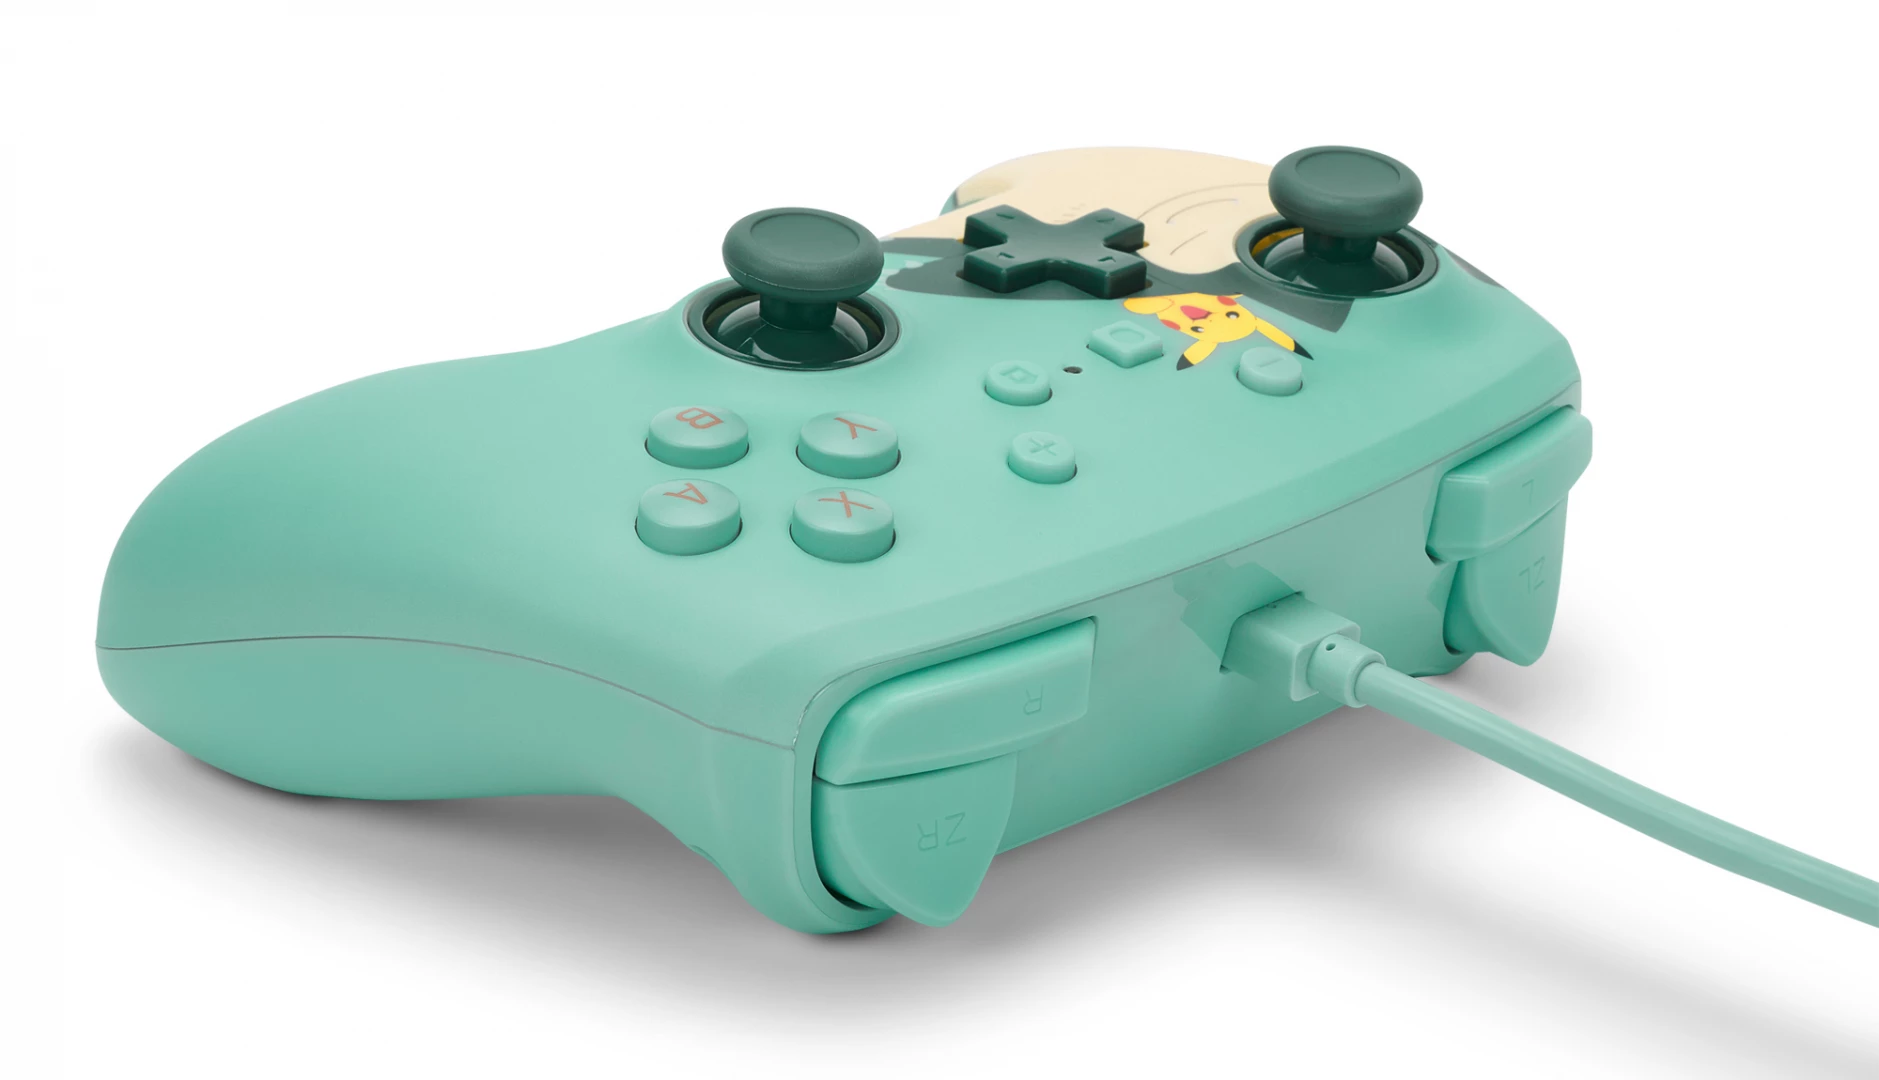 PowerA Enhanced Wired Controller - Snorlax and Friends voor de Nintendo Switch kopen op nedgame.nl